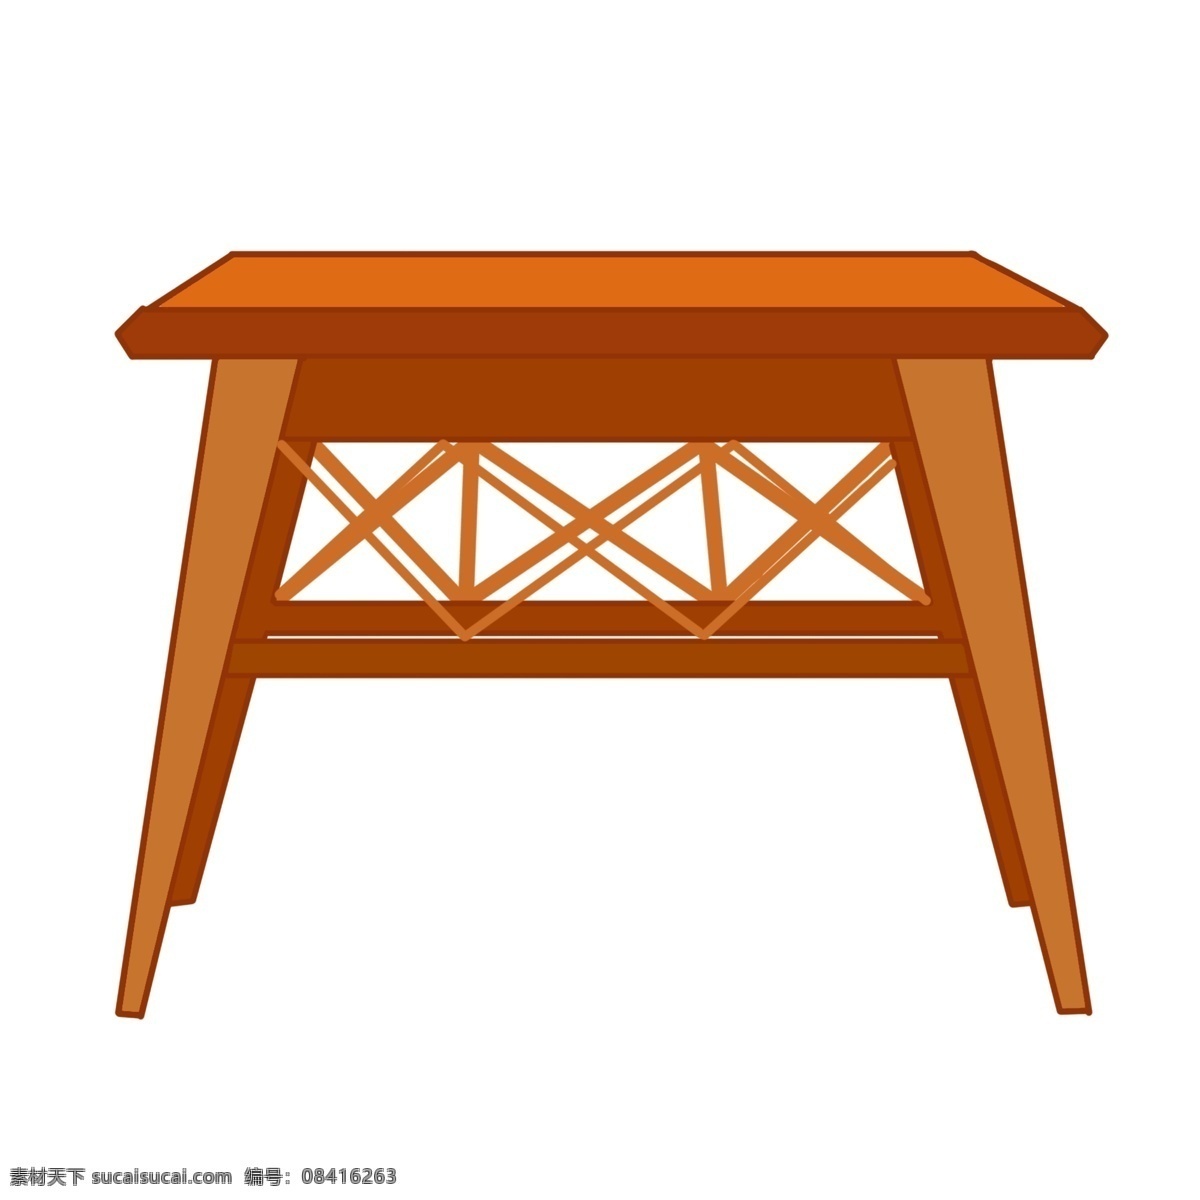 手绘 高高 桌子 插画 榫卯的桌子 卡通插画 手绘桌子插画 创意家具插画 棕色的桌面 高高的桌子